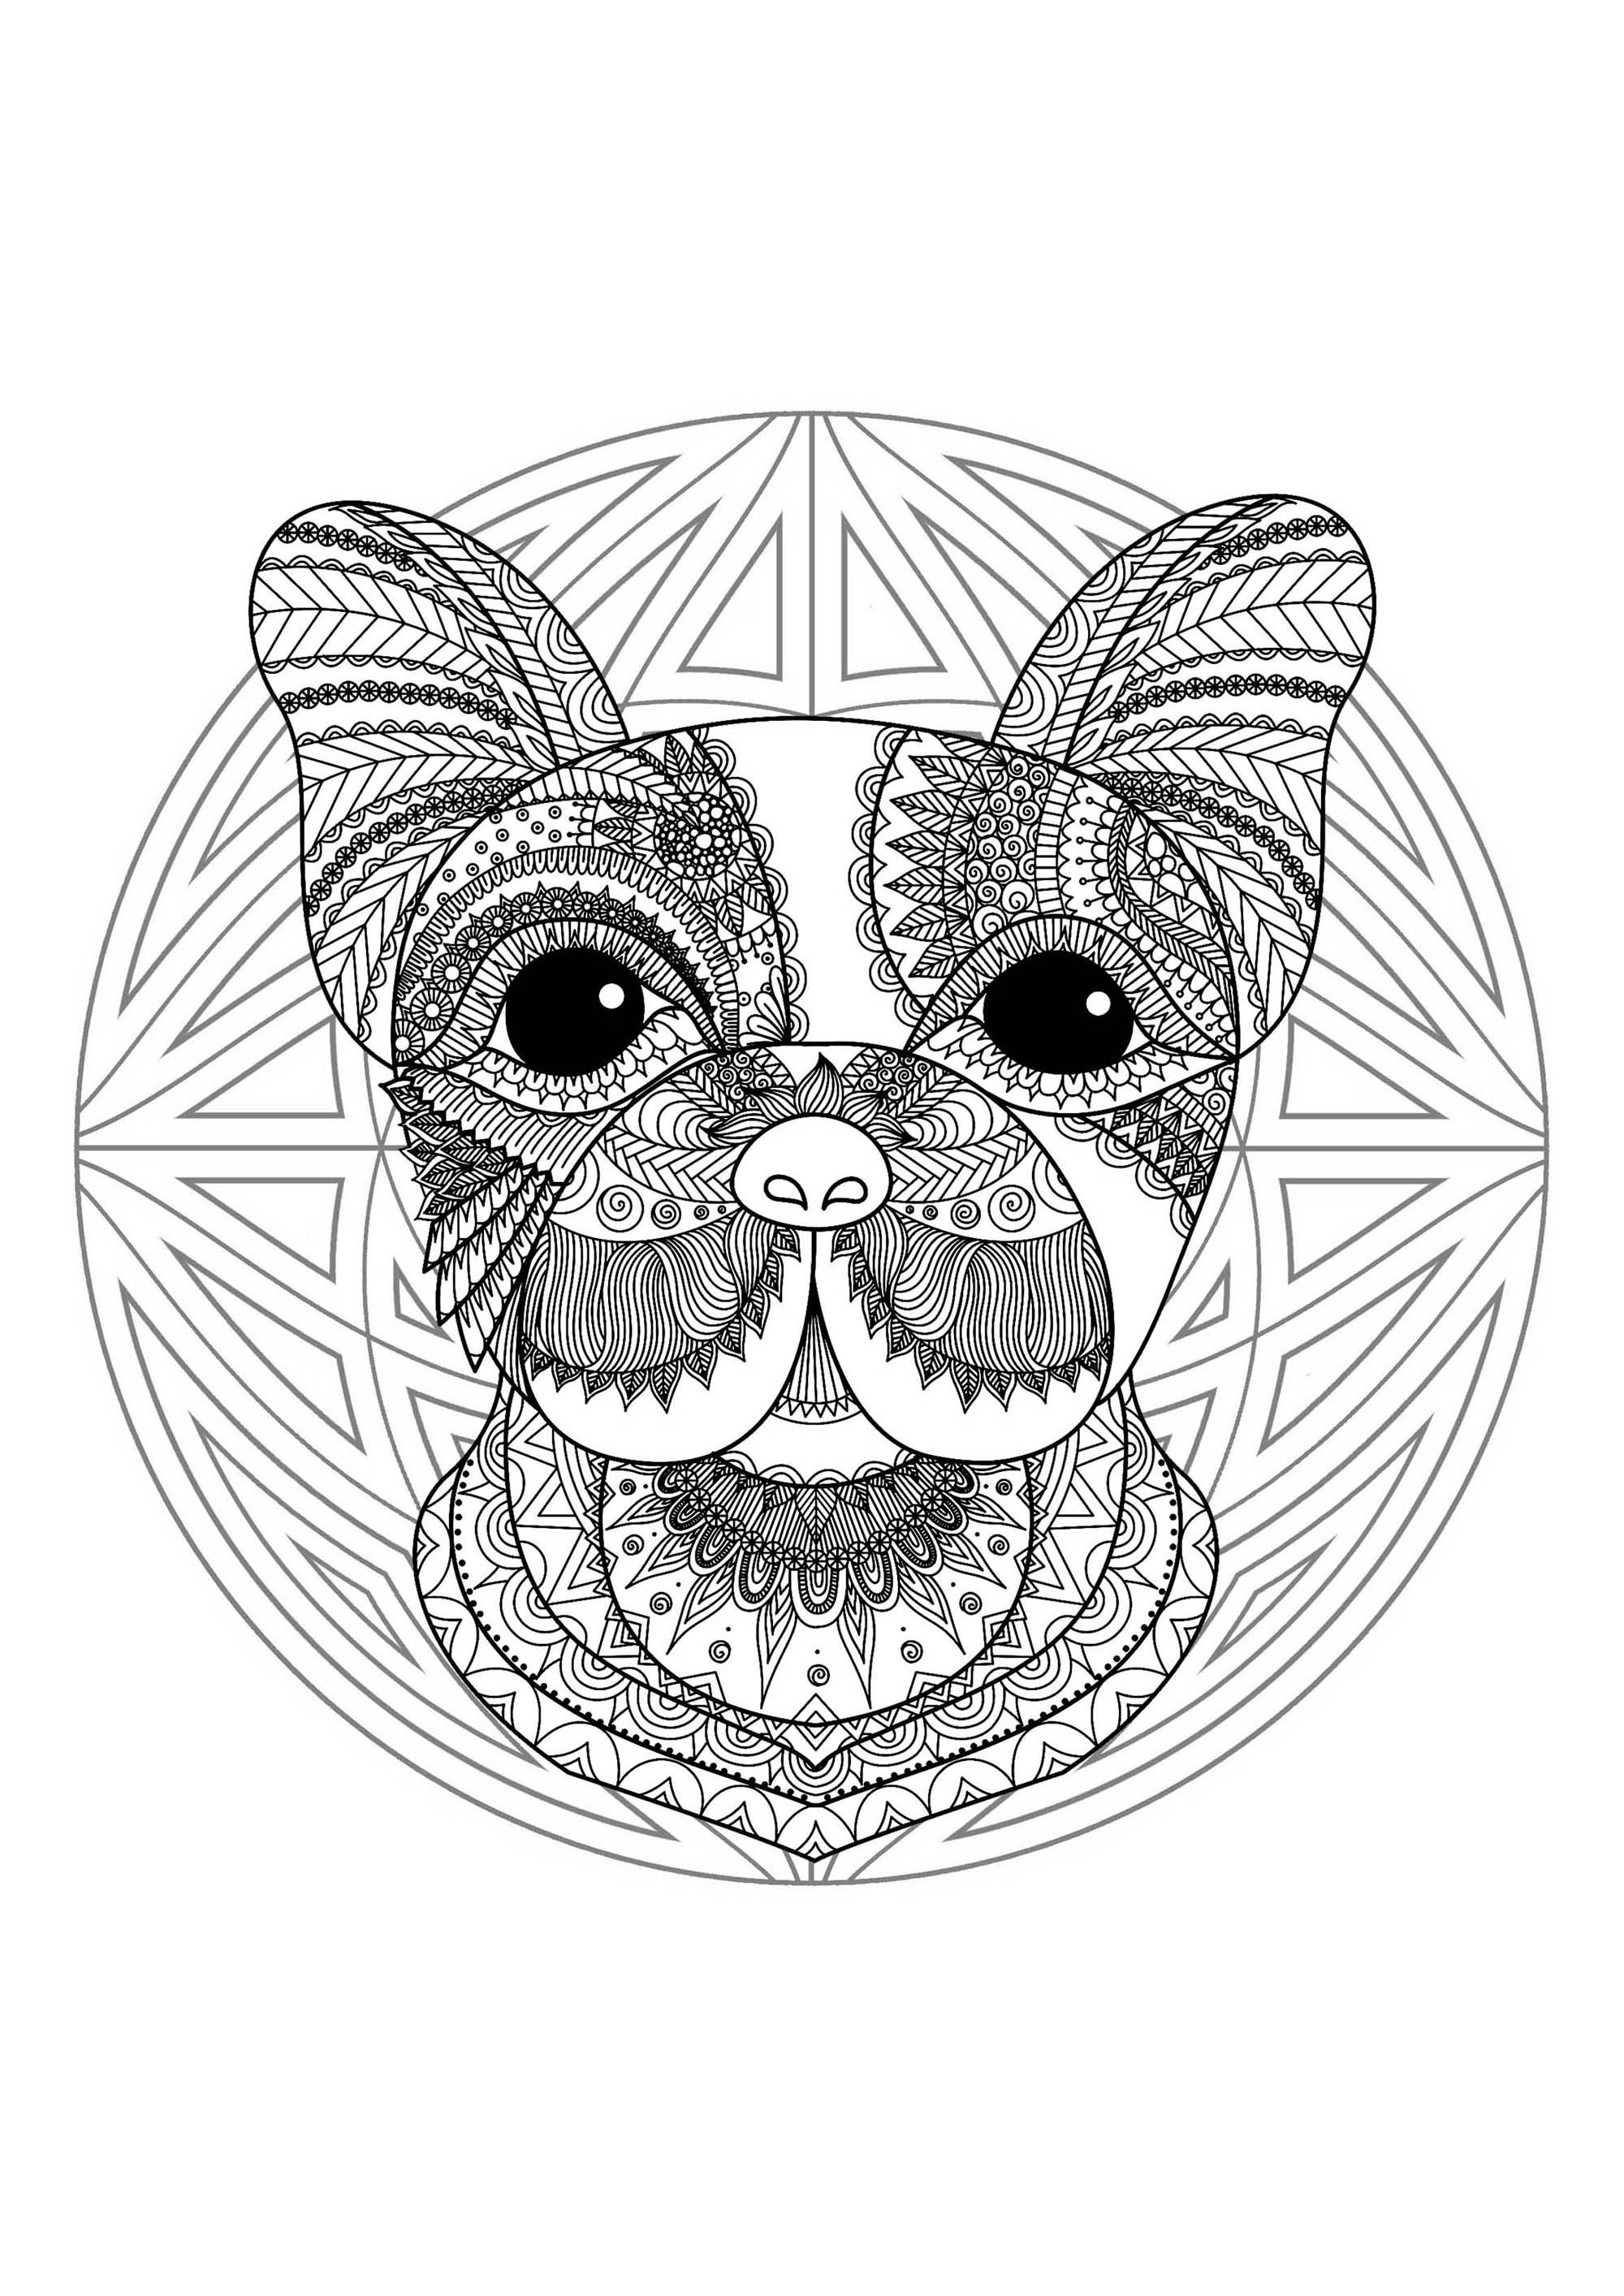 Página para colorear con una divertida cabeza de perro y un bonito mandala de fondo